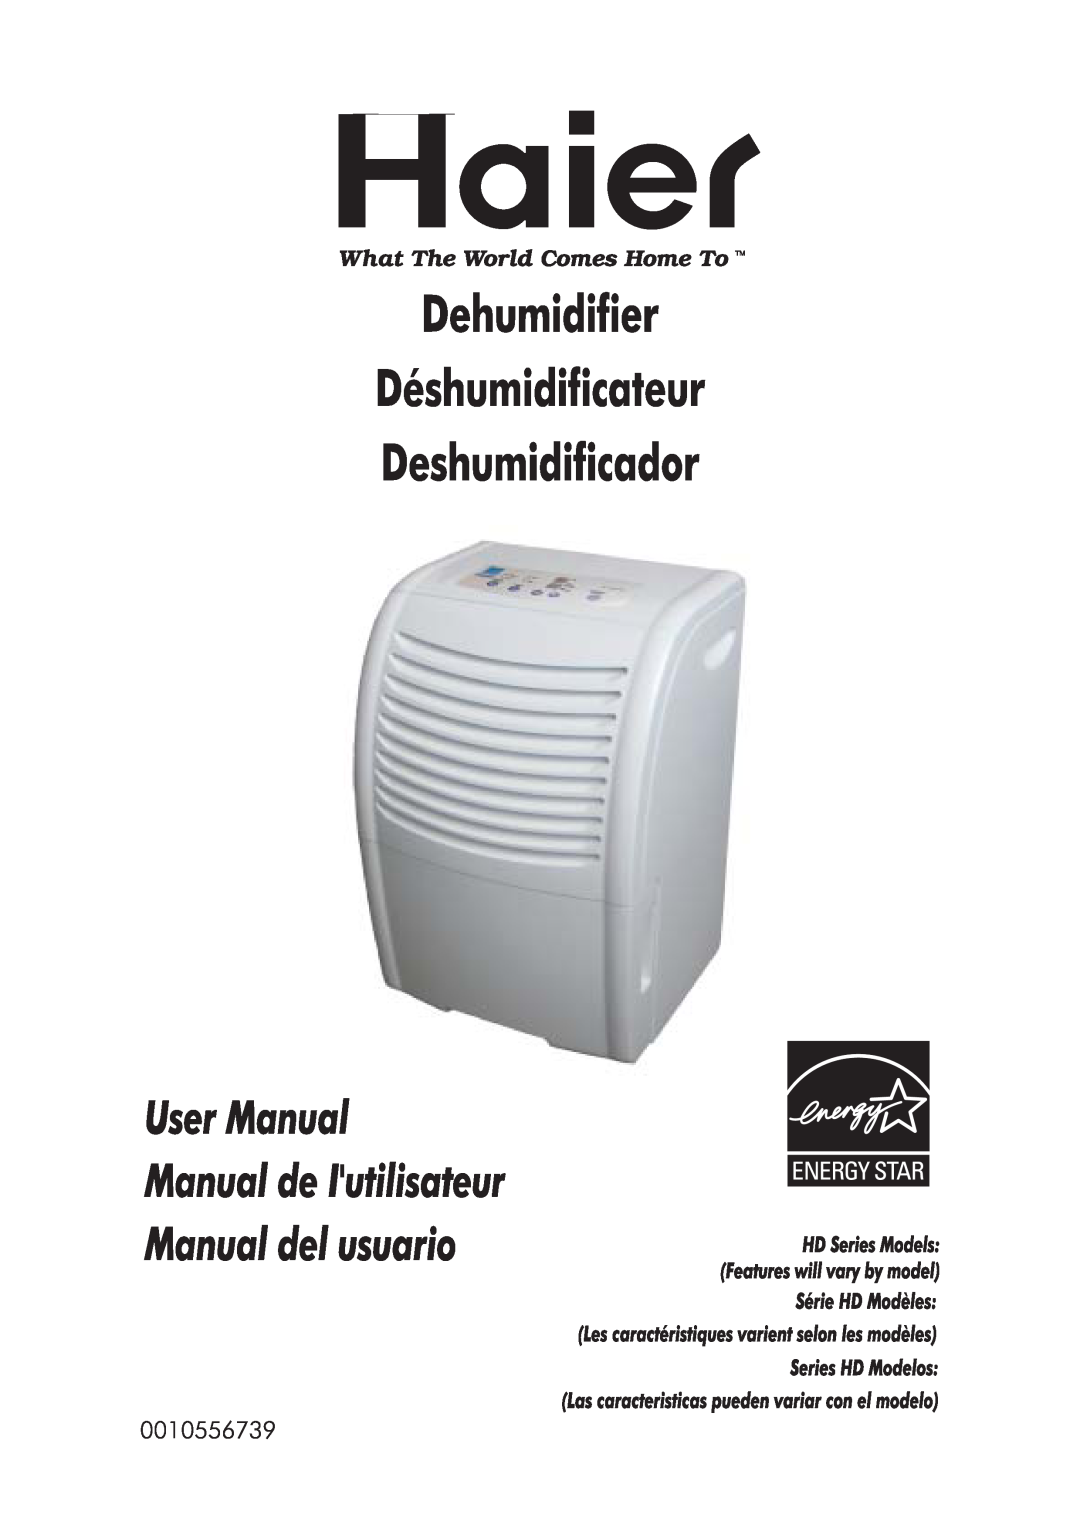 Haier Dehumidifier manual 